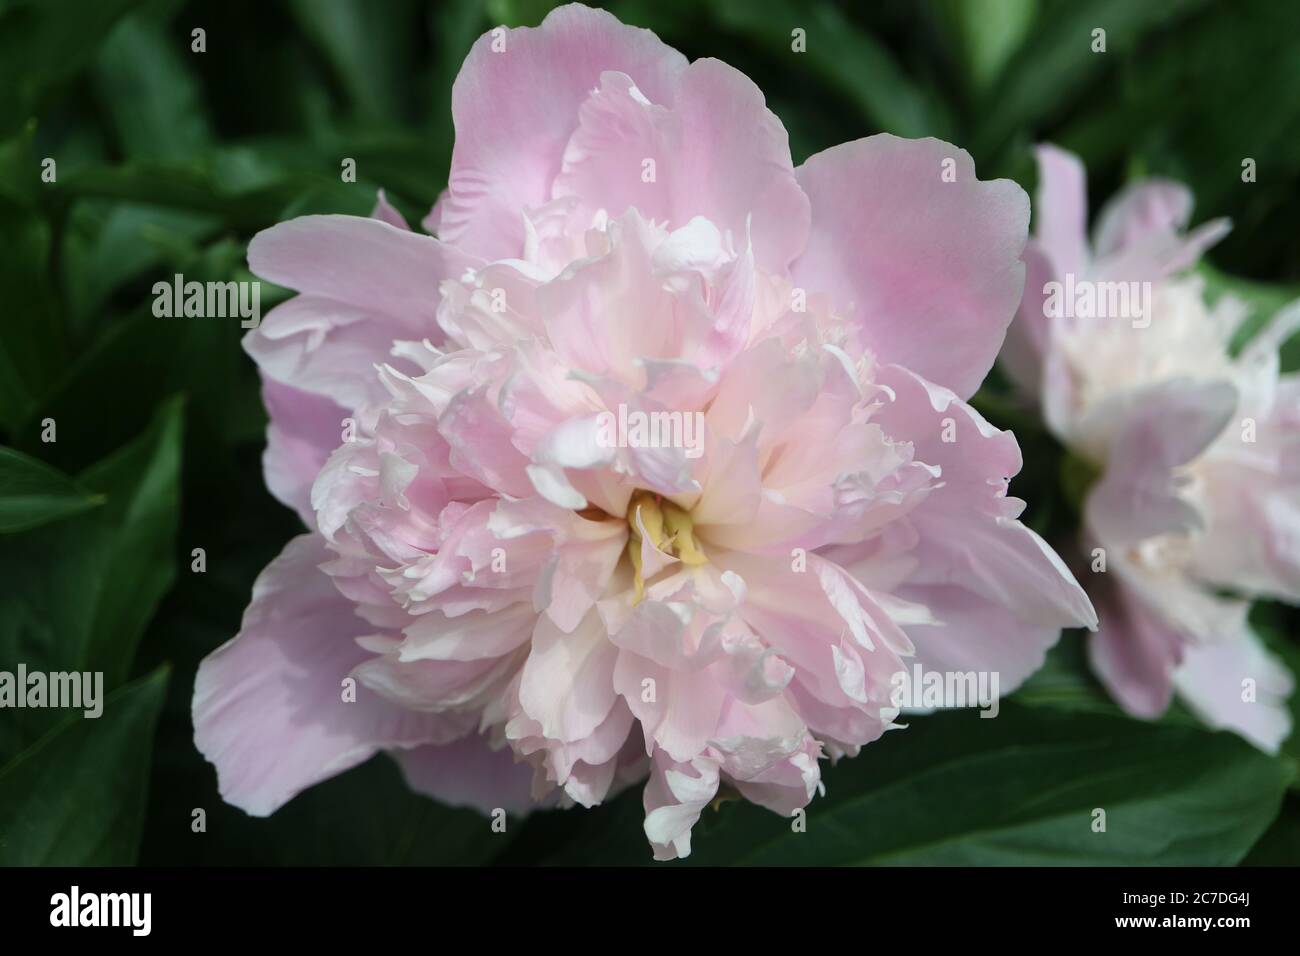 Pivoine rose clair avec des pétales délicats et des feuilles vertes dans le jardin, pivoine rose clair avec des pétales délicats macro, fleur fleur, photo florale, macro Banque D'Images